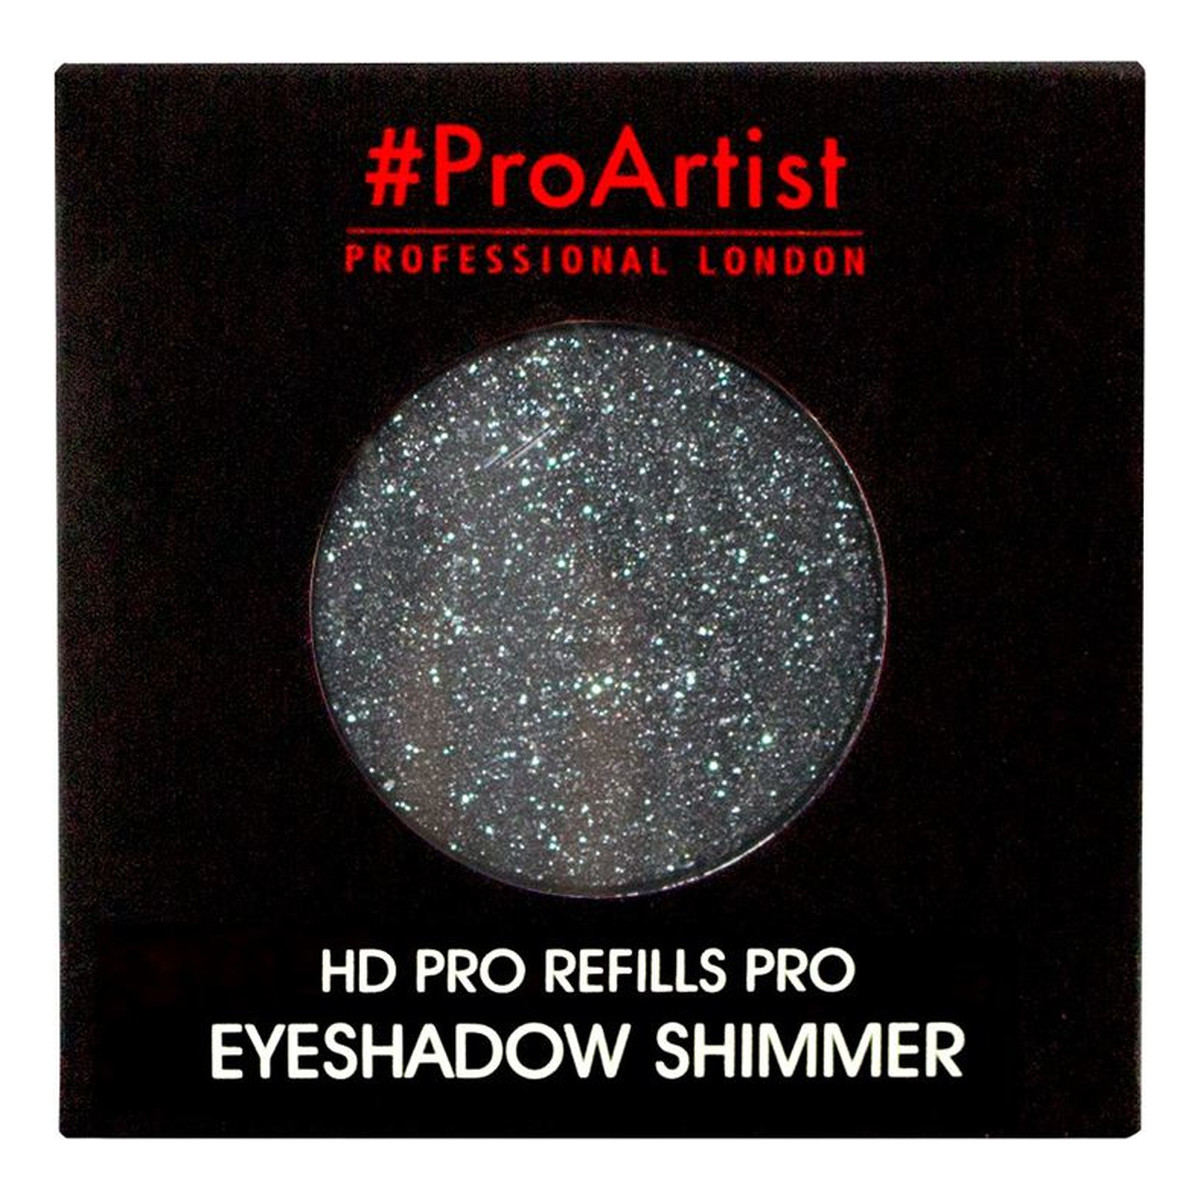 Freedom Makeup Pro Artist HD Refills Shimmer Cień do powiek